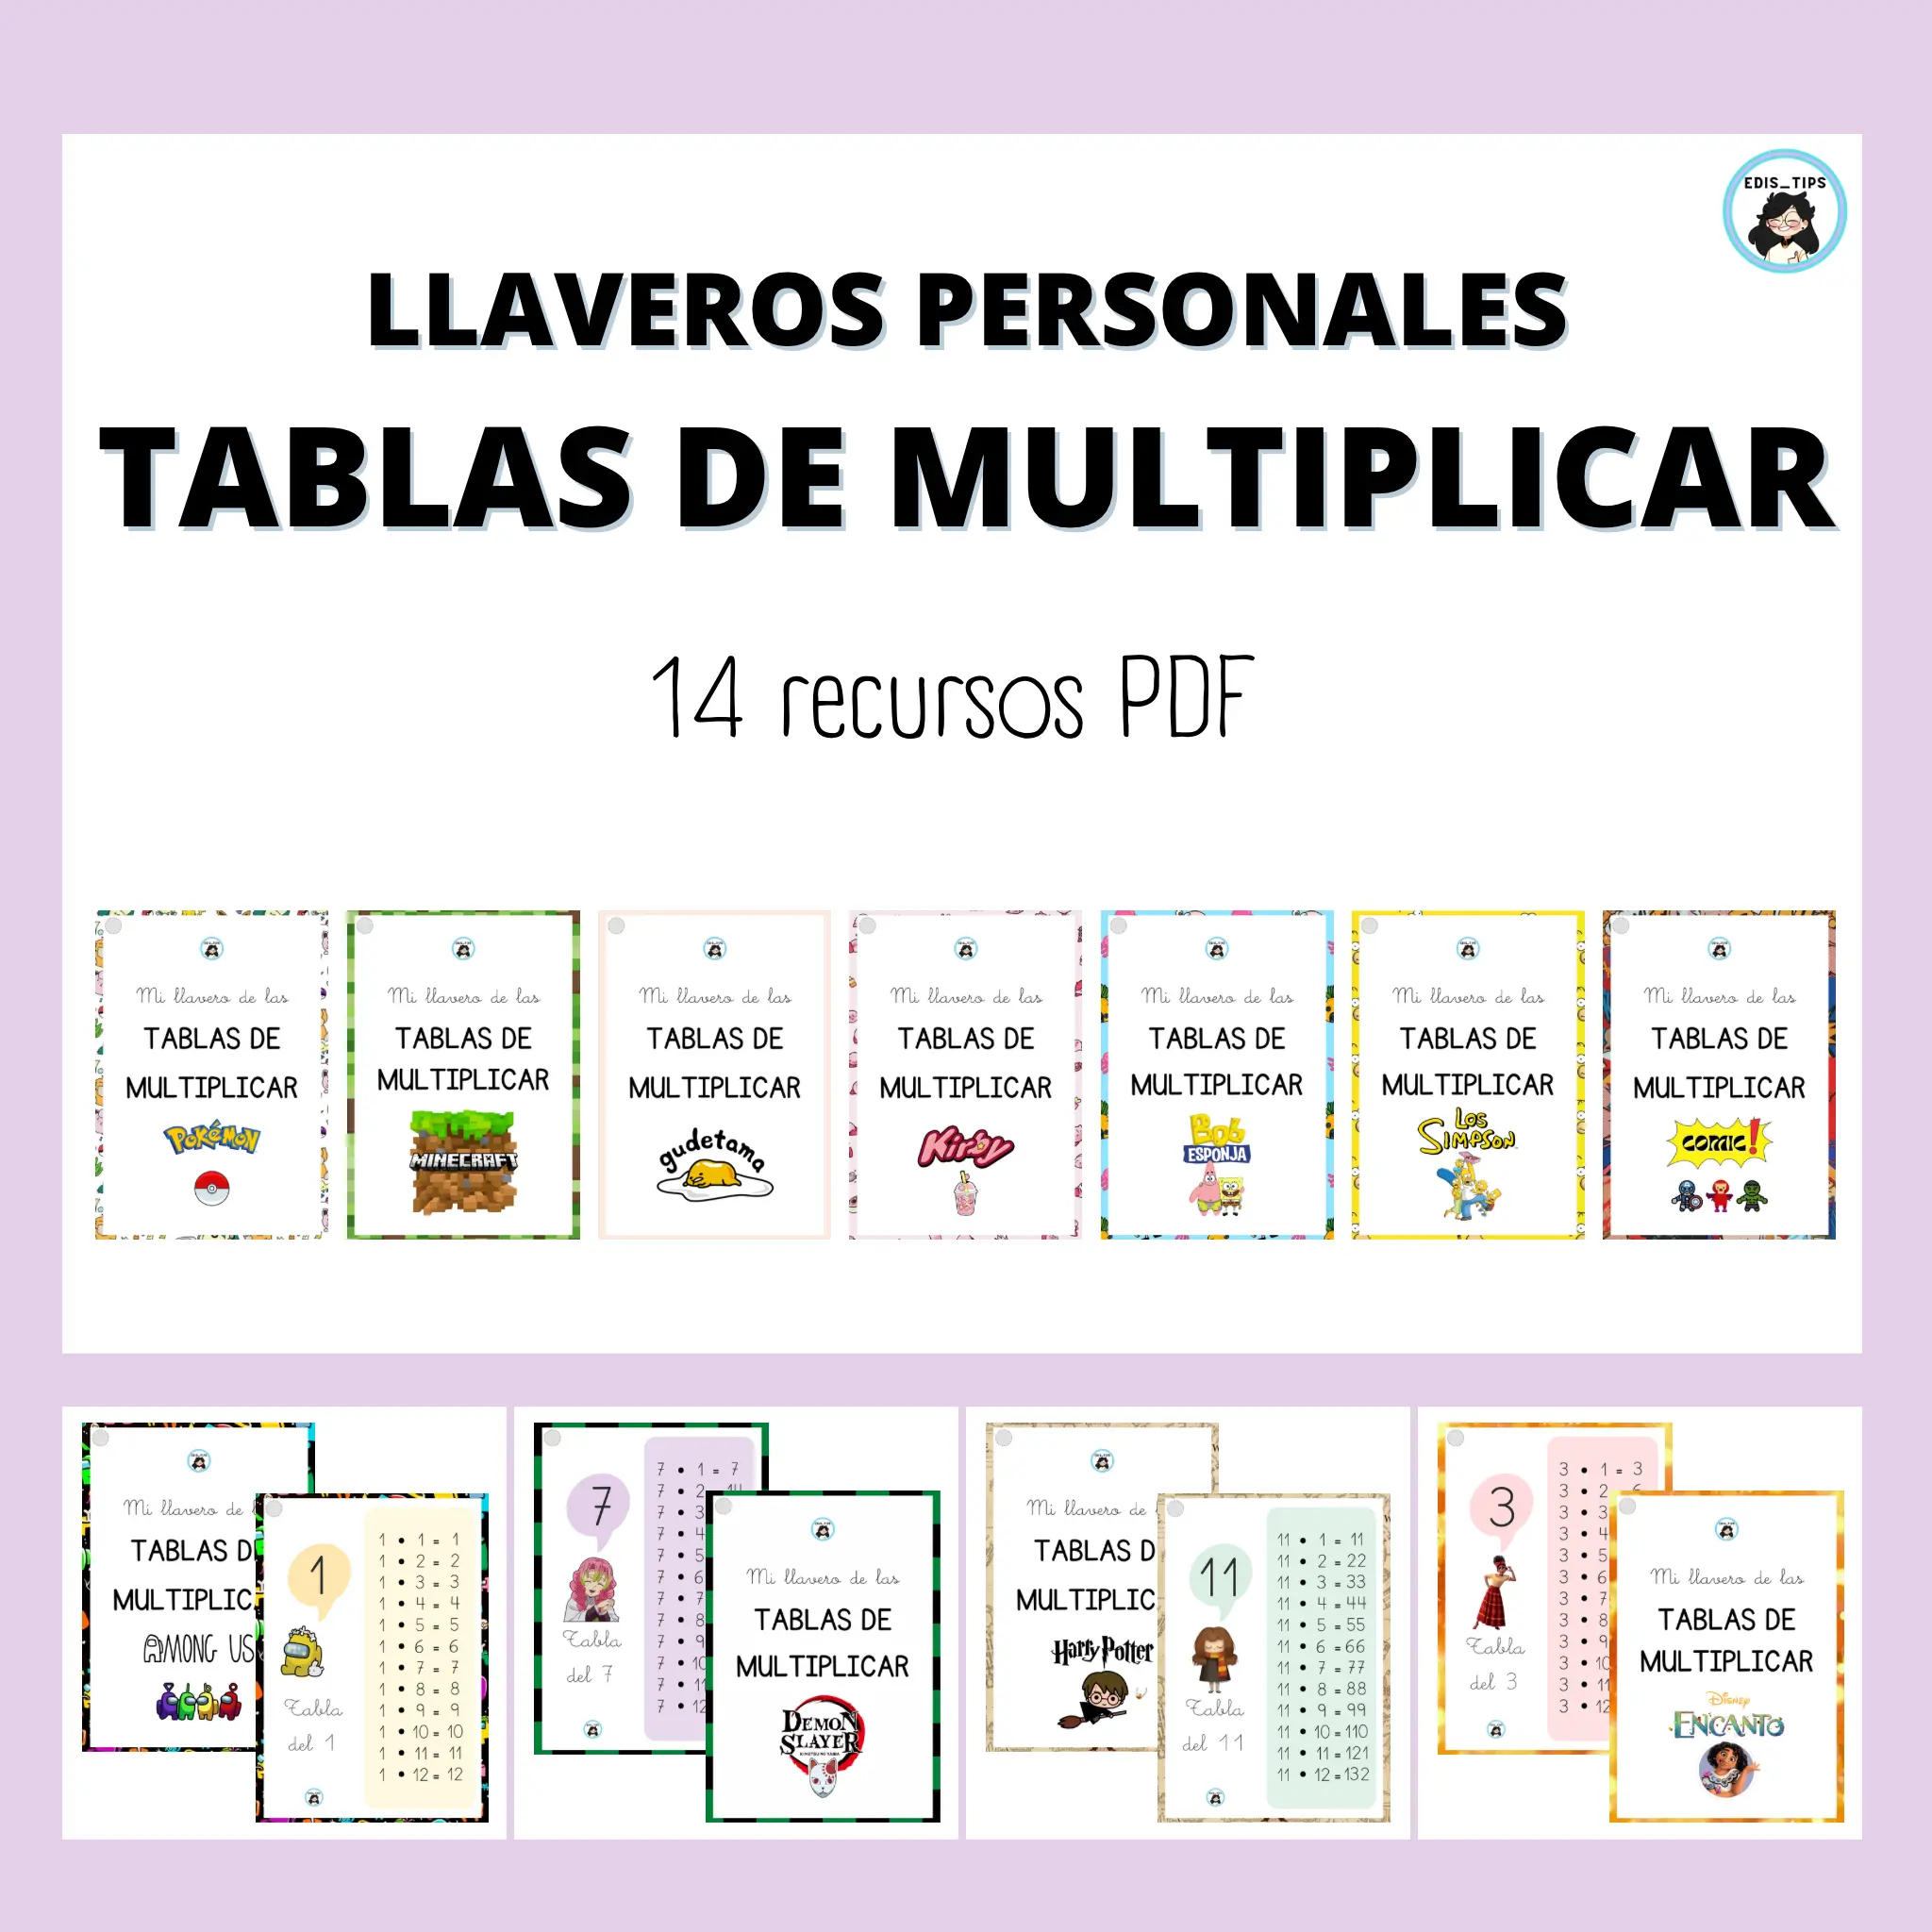 LLAVEROS PERSONALES - TABLAS DE MULTIPLICAR